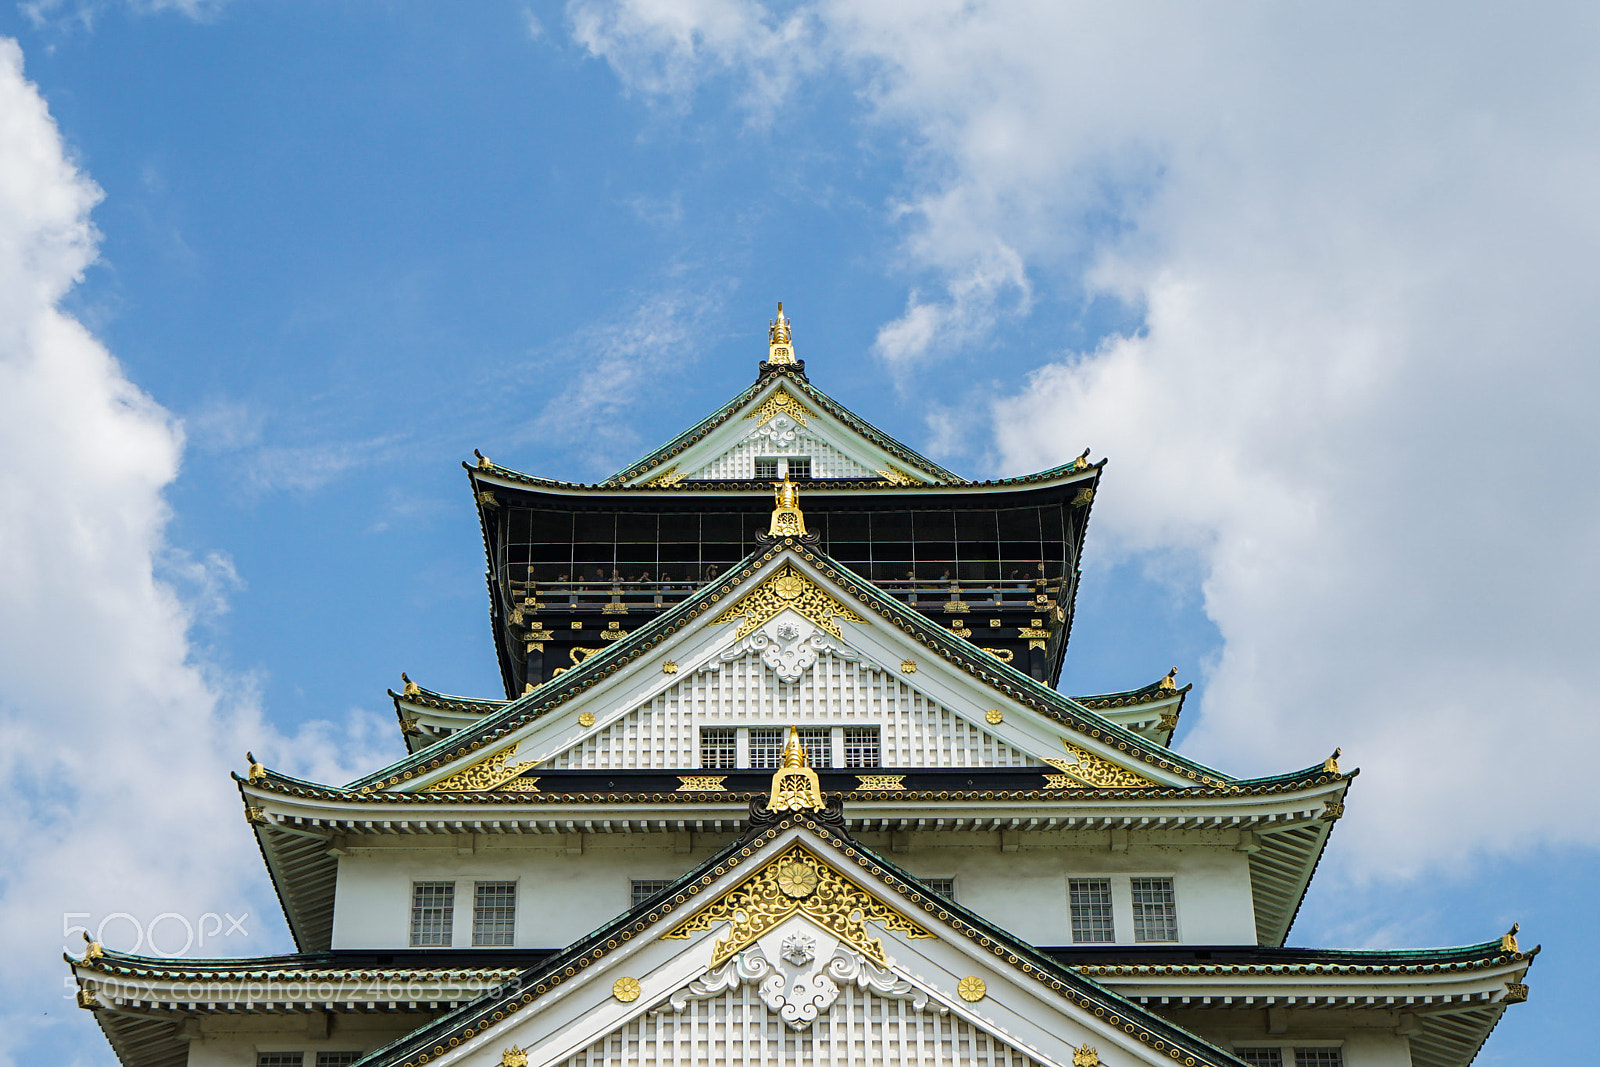 Sony a7 II sample photo. Osaka castle 大阪城 photography